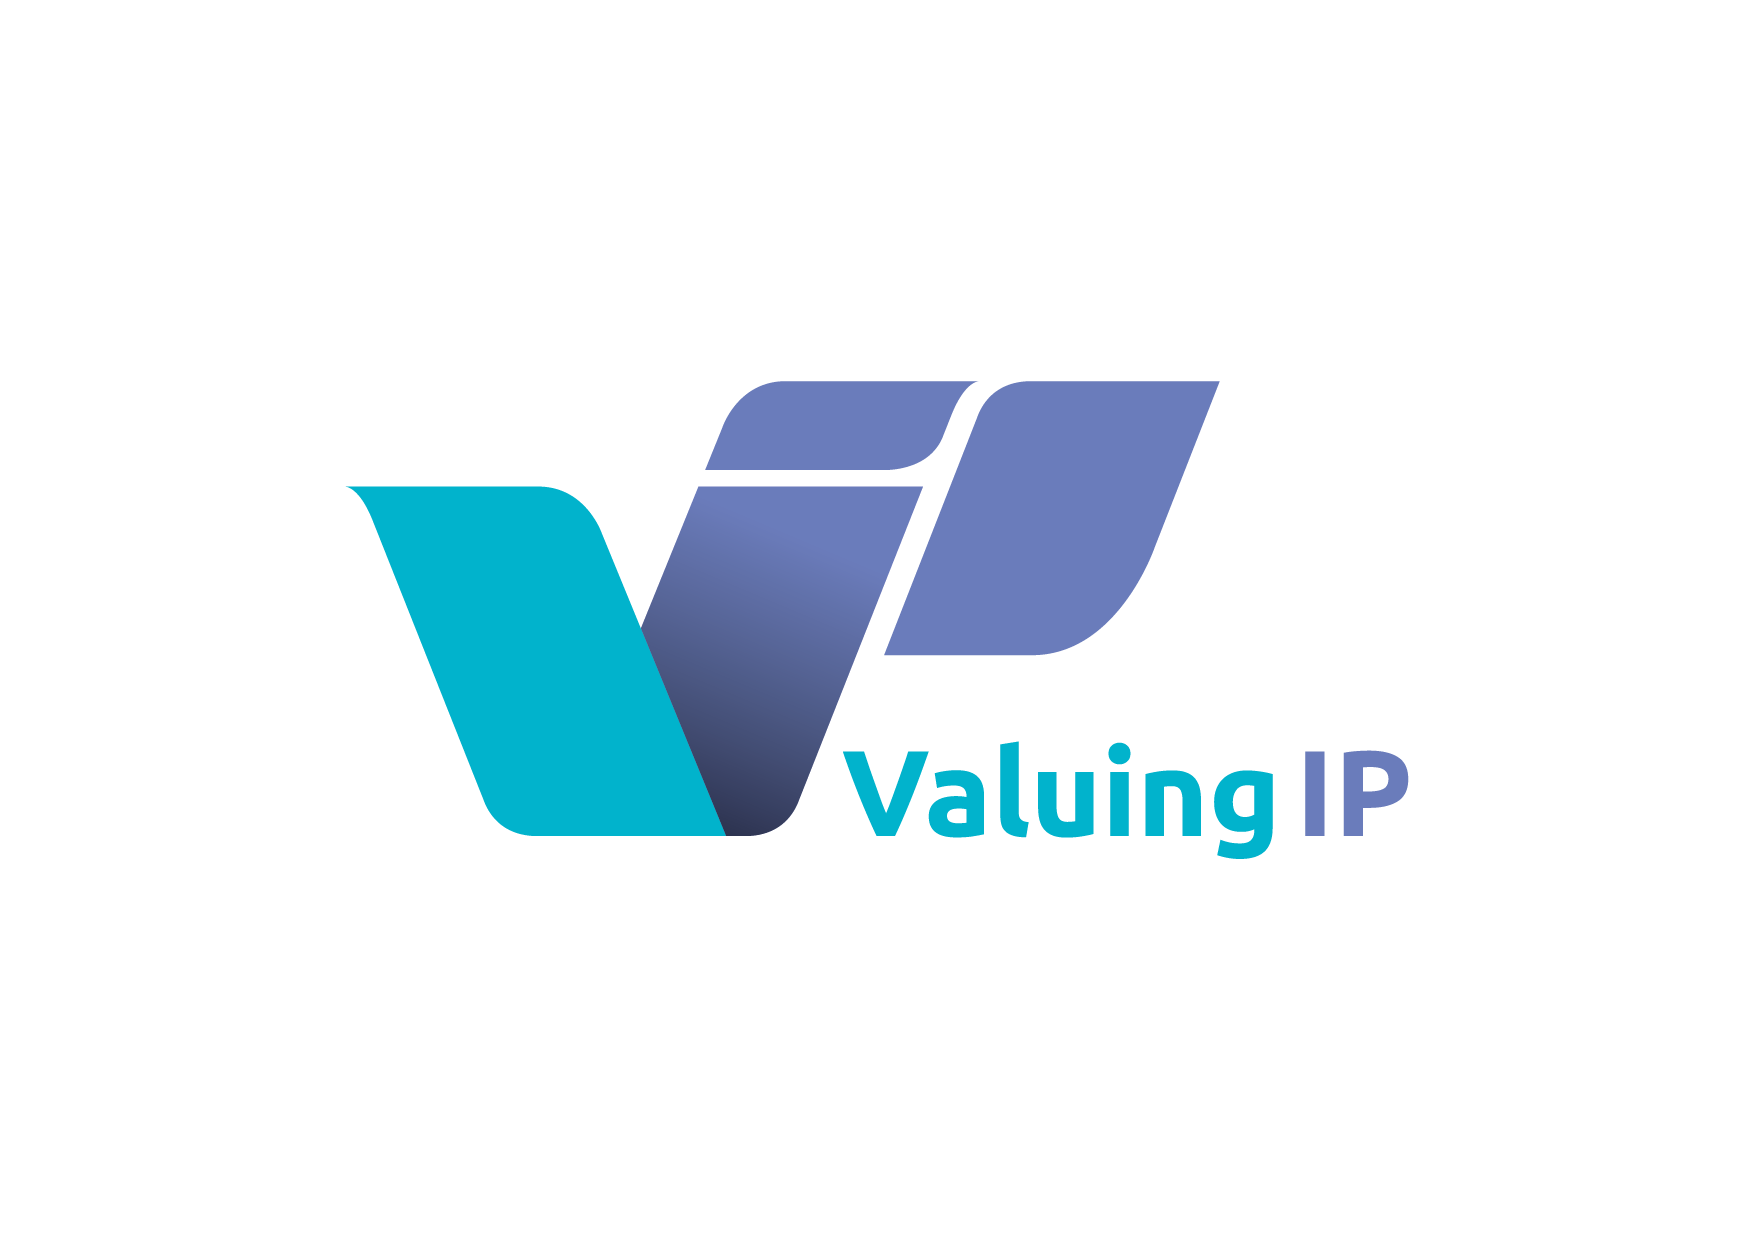 Valuing IP